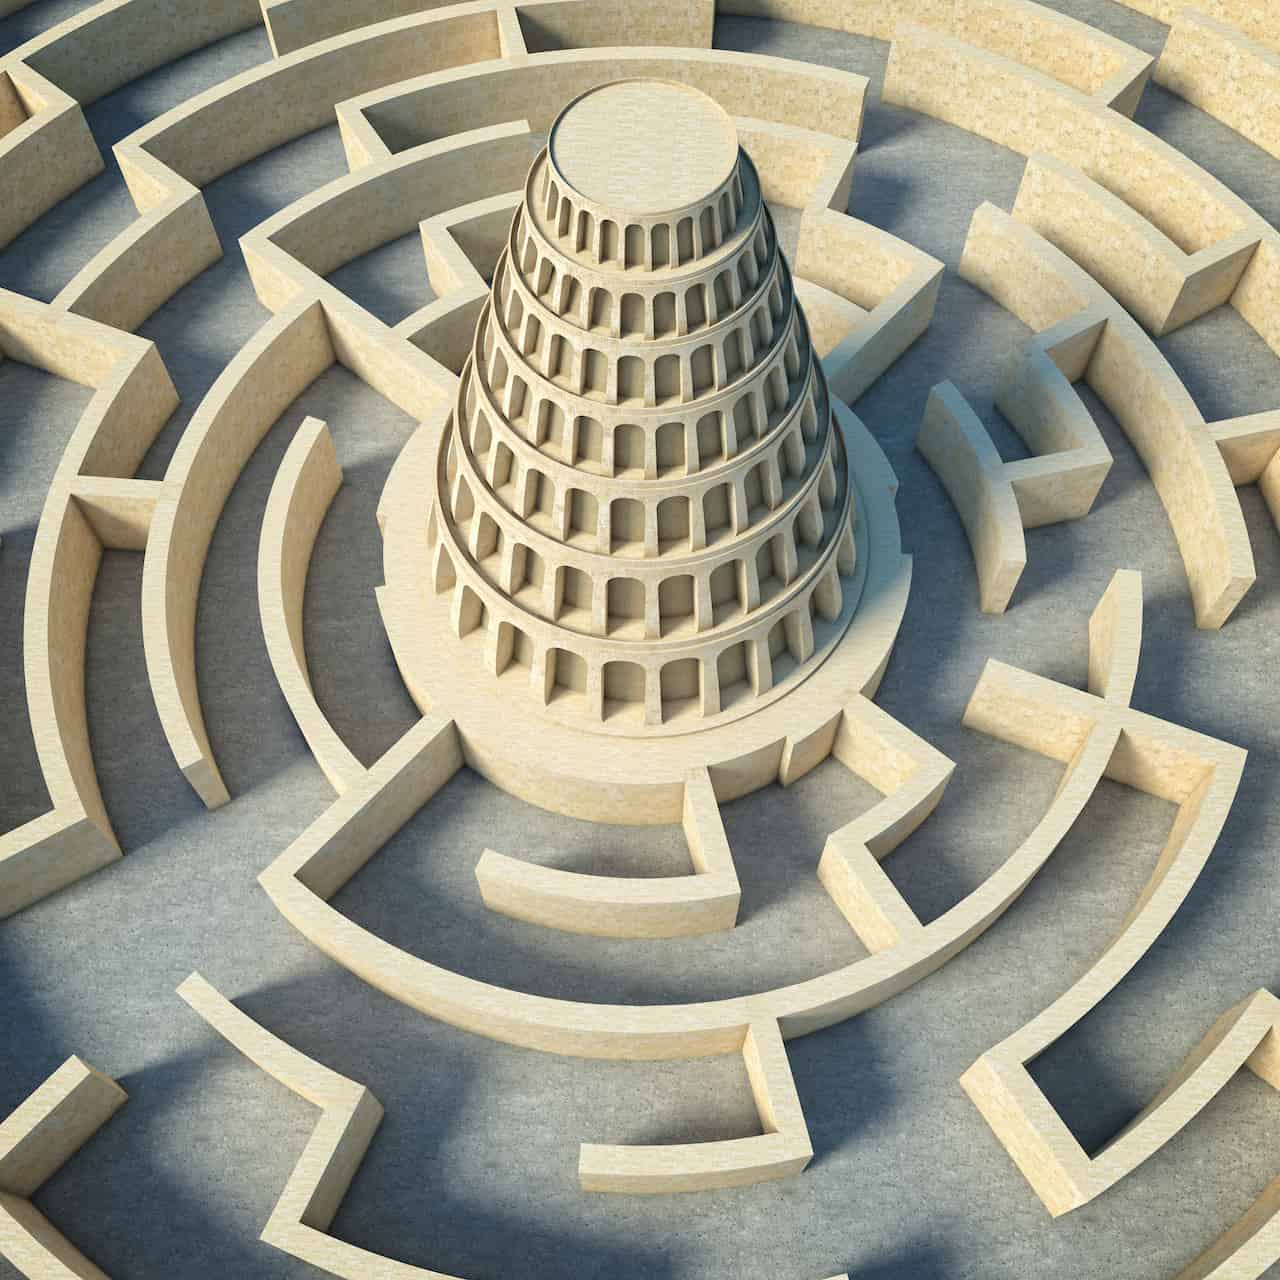 Le concept de la Tour de Babel